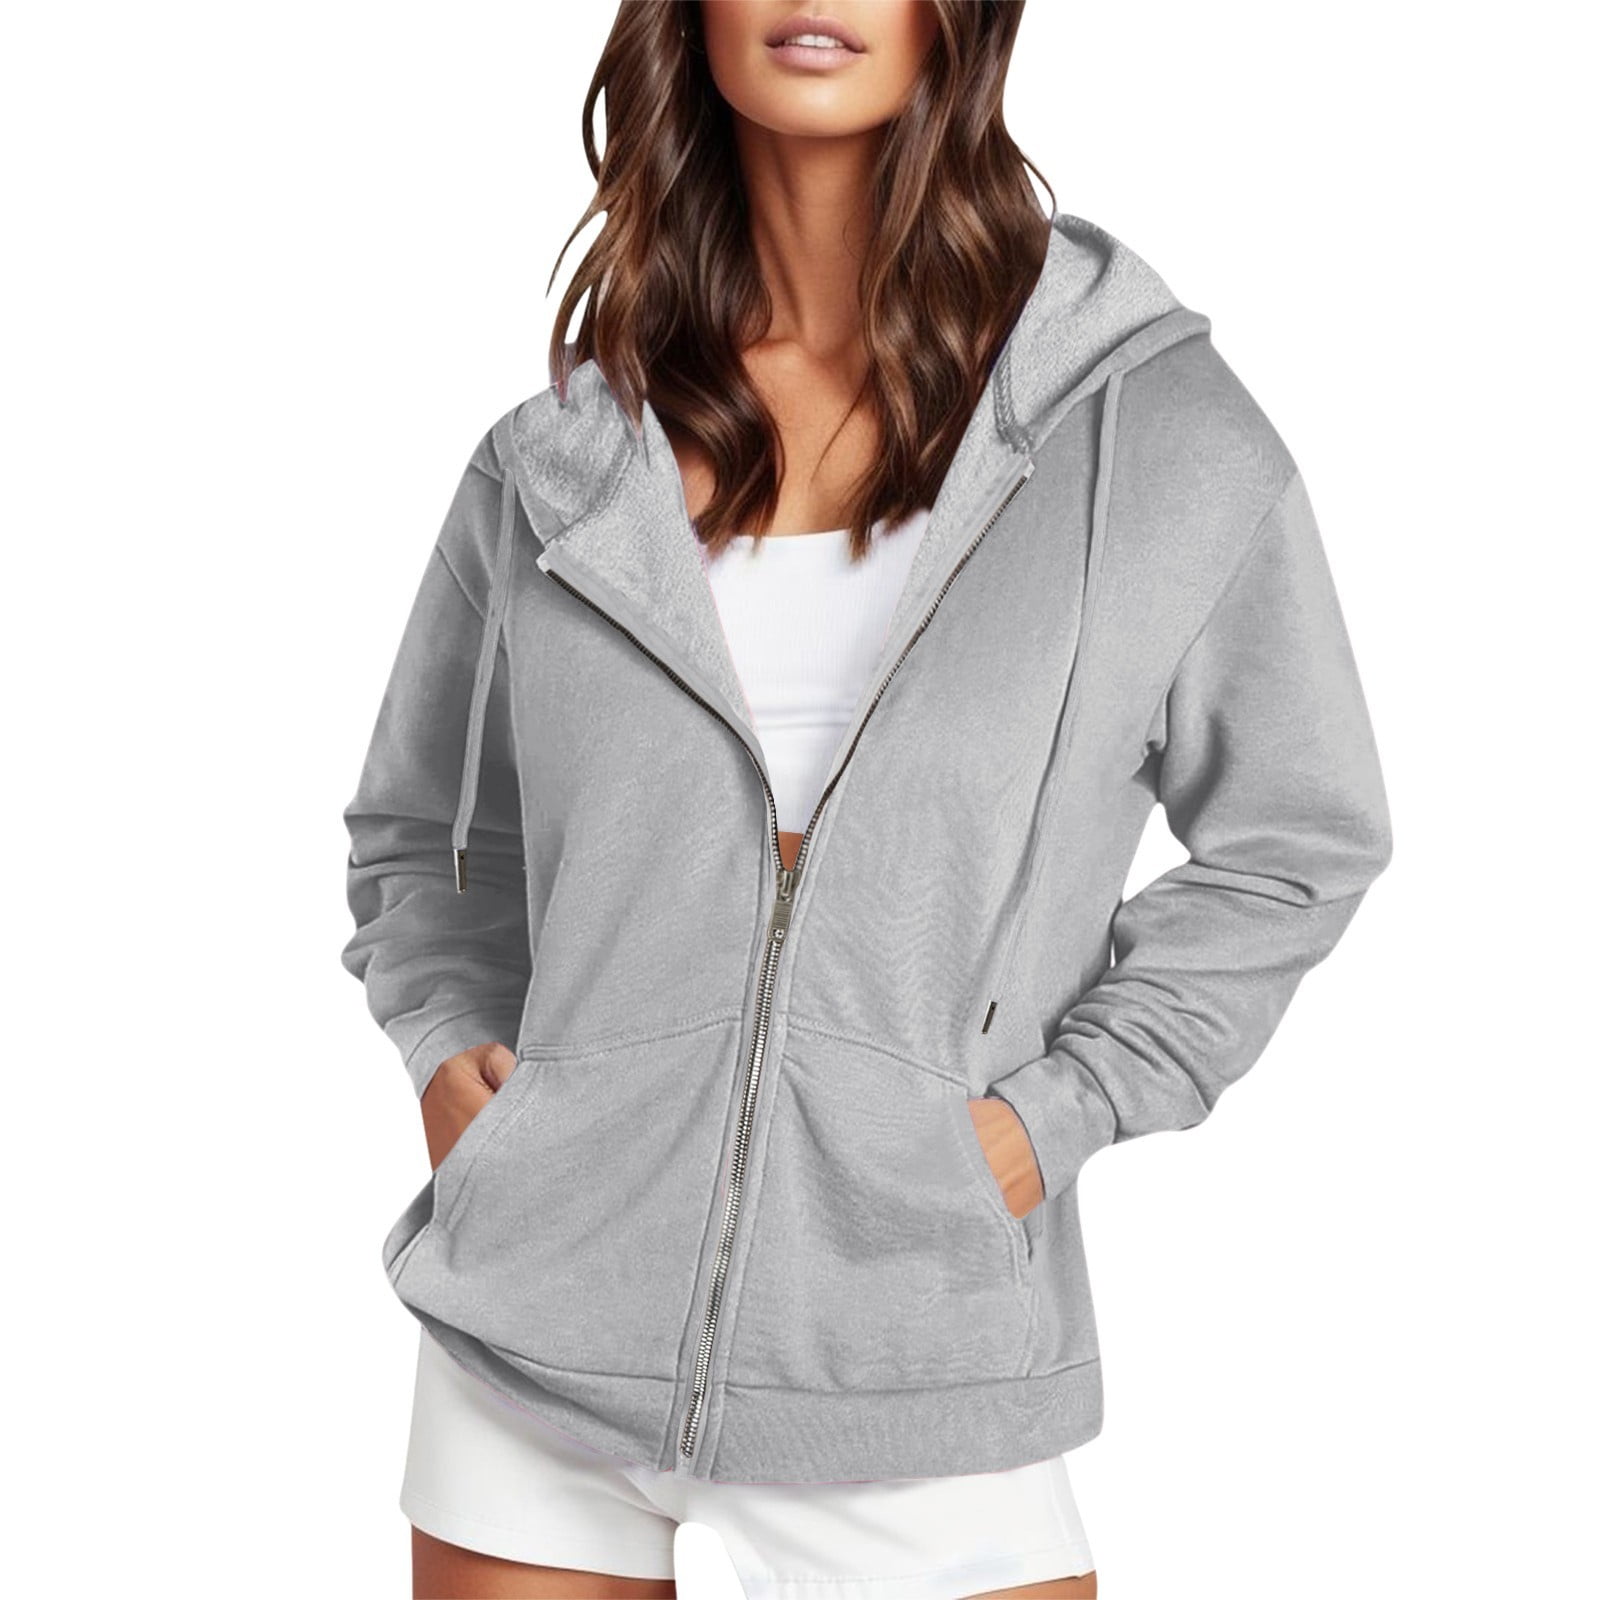 Aayomet Women's Full Zip Up Hoodie Long Sleeve Hooded Sweatshirts ...